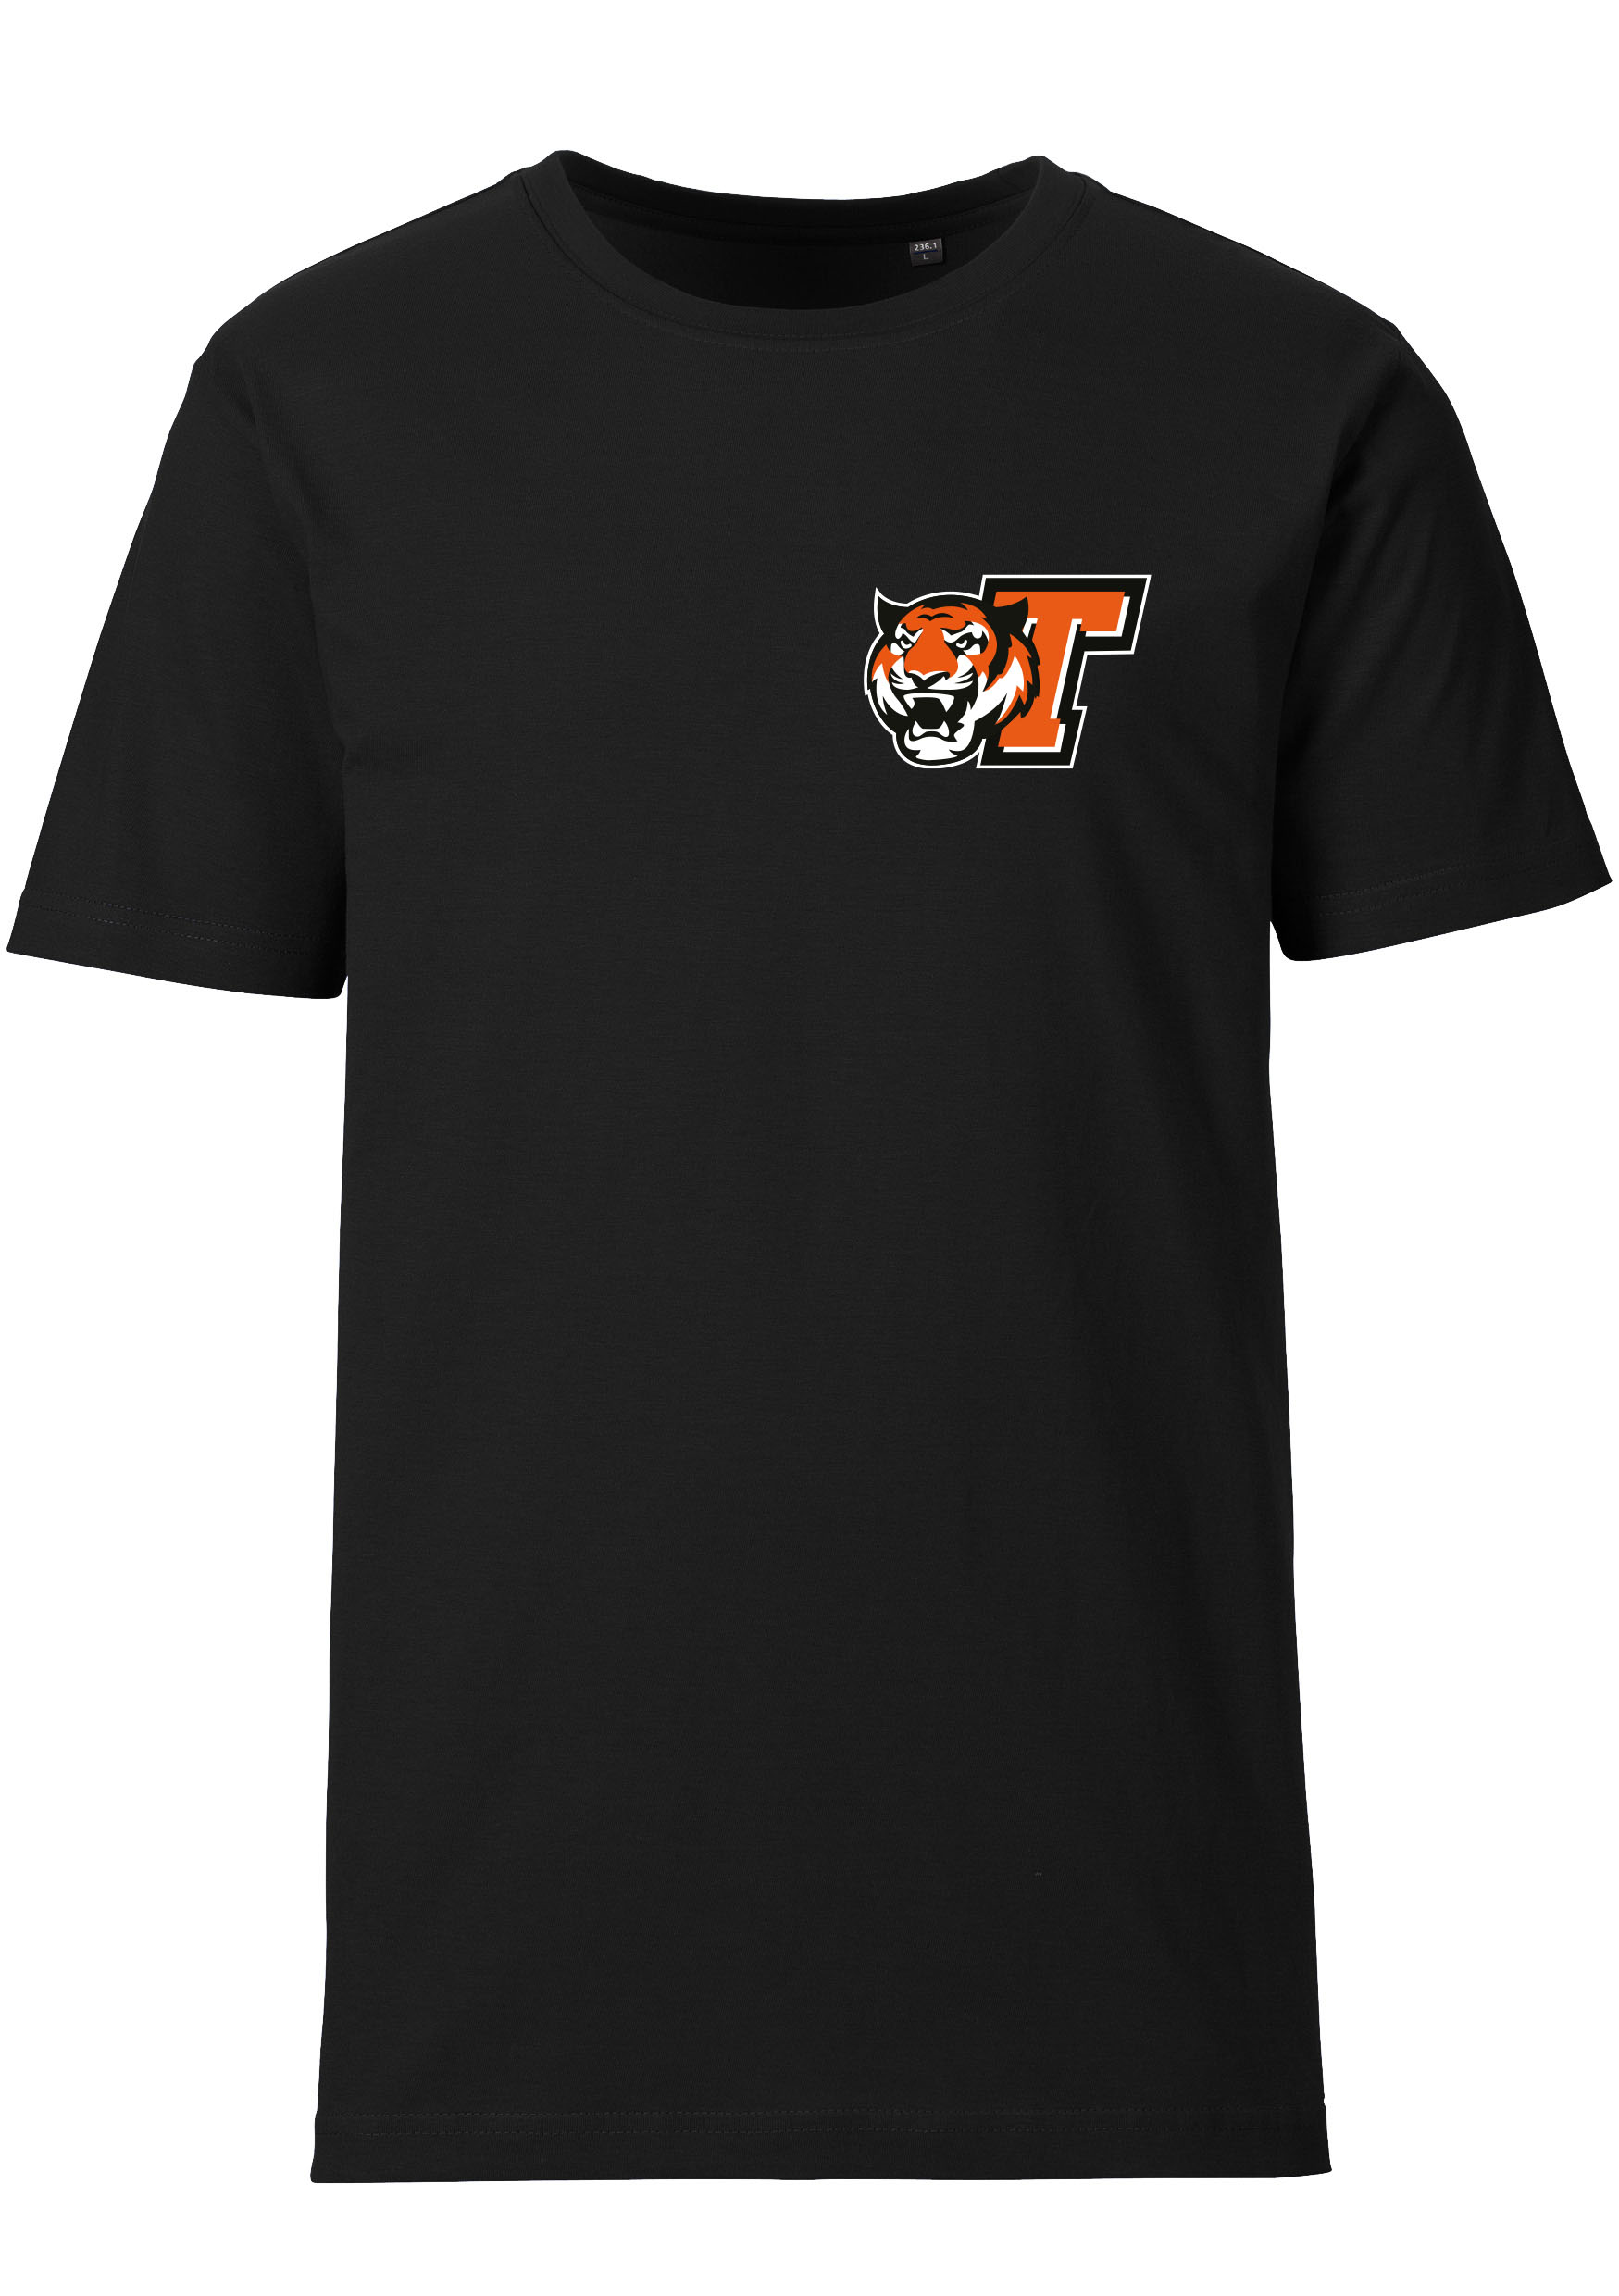 Berlin Tiger T-Shirt - Color Crew GmbH